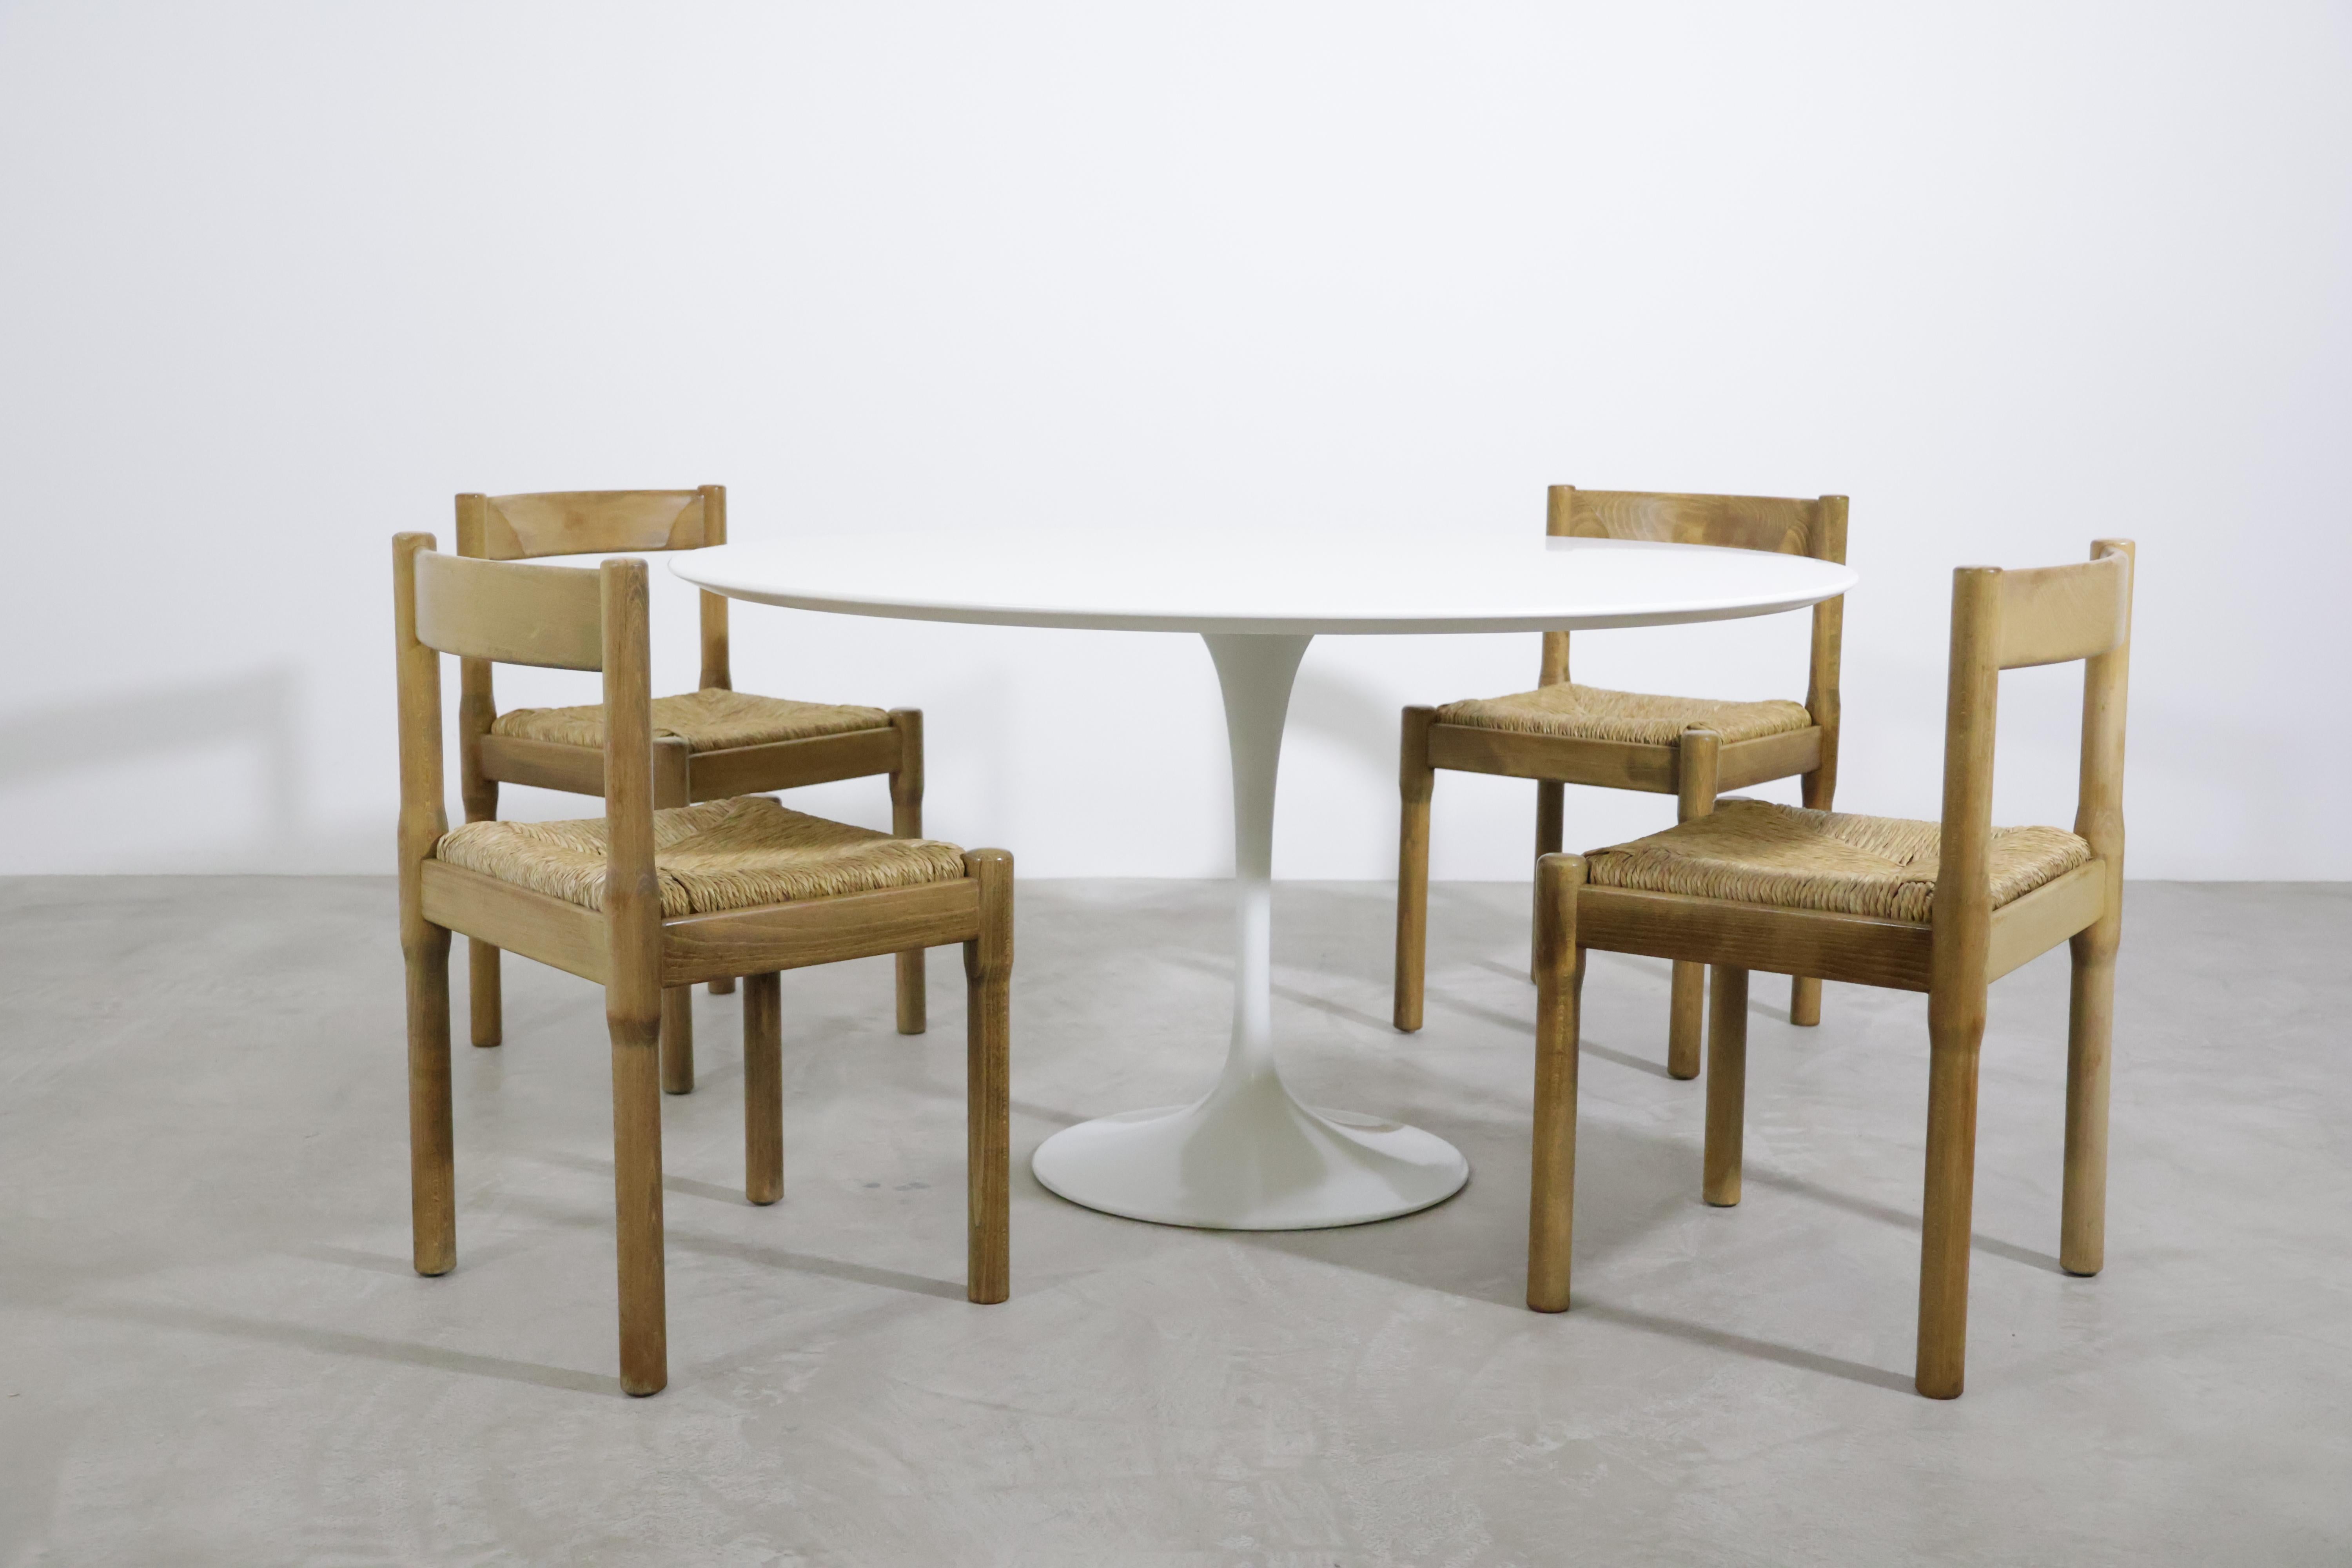 Magnifique ensemble de 14 chaises de salle à manger 'Carimate' par Vico Magistretti pour Mario Luigi Comi/Italie dans les années 60 !
La chaise 